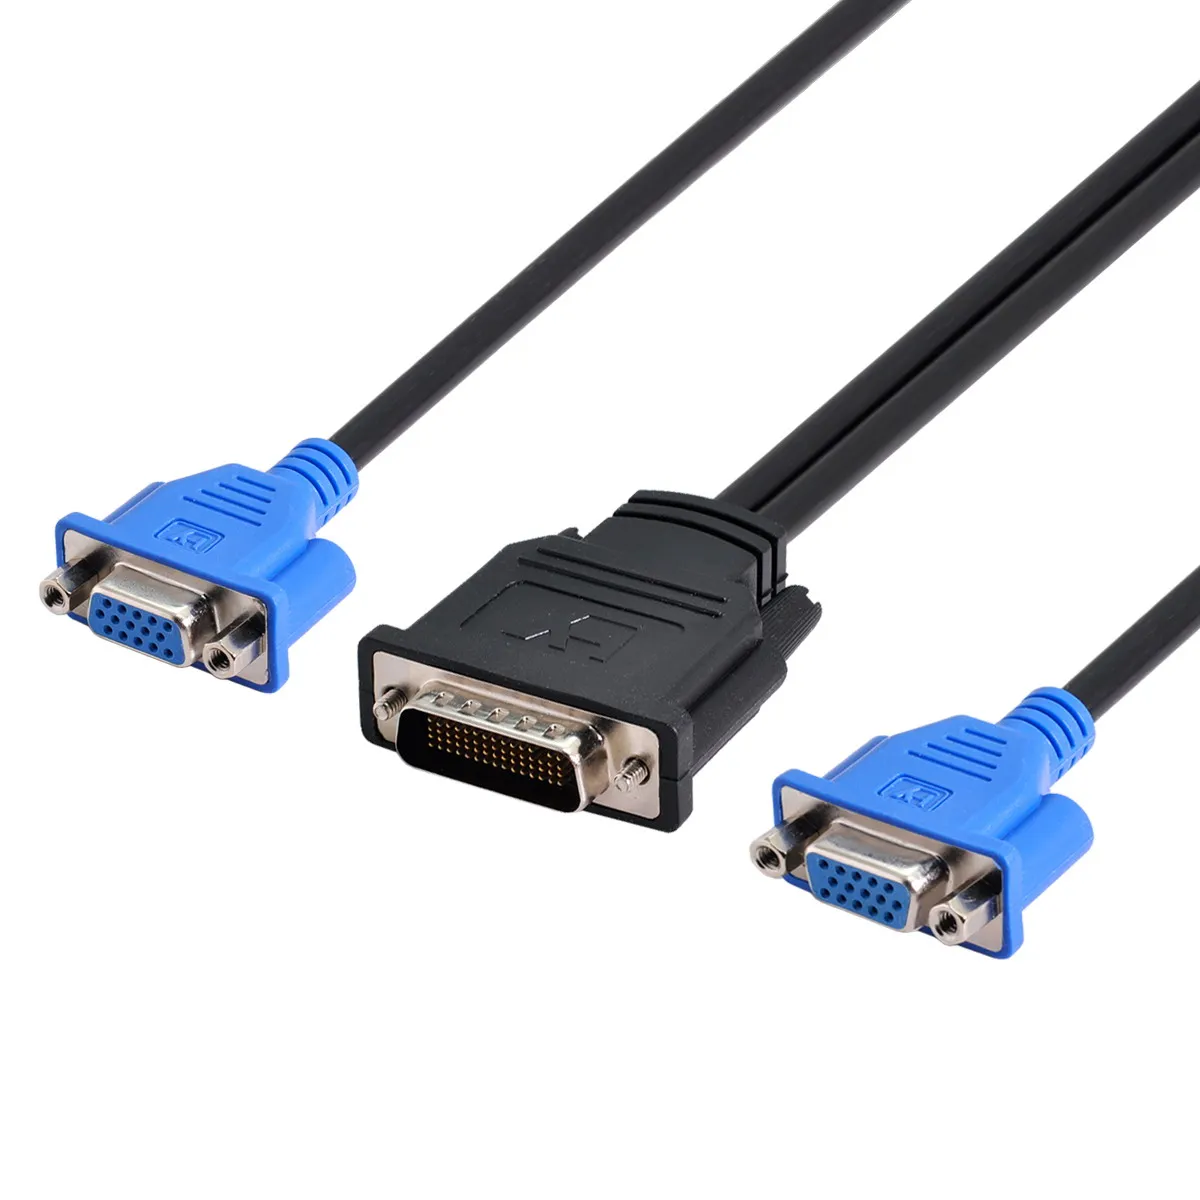 

Удлинительный кабель-разветвитель Zihan CY DMS-59pin (штекер)/2 15-контактных разъема VGA RGB (разъем), для видеокарты, ПК